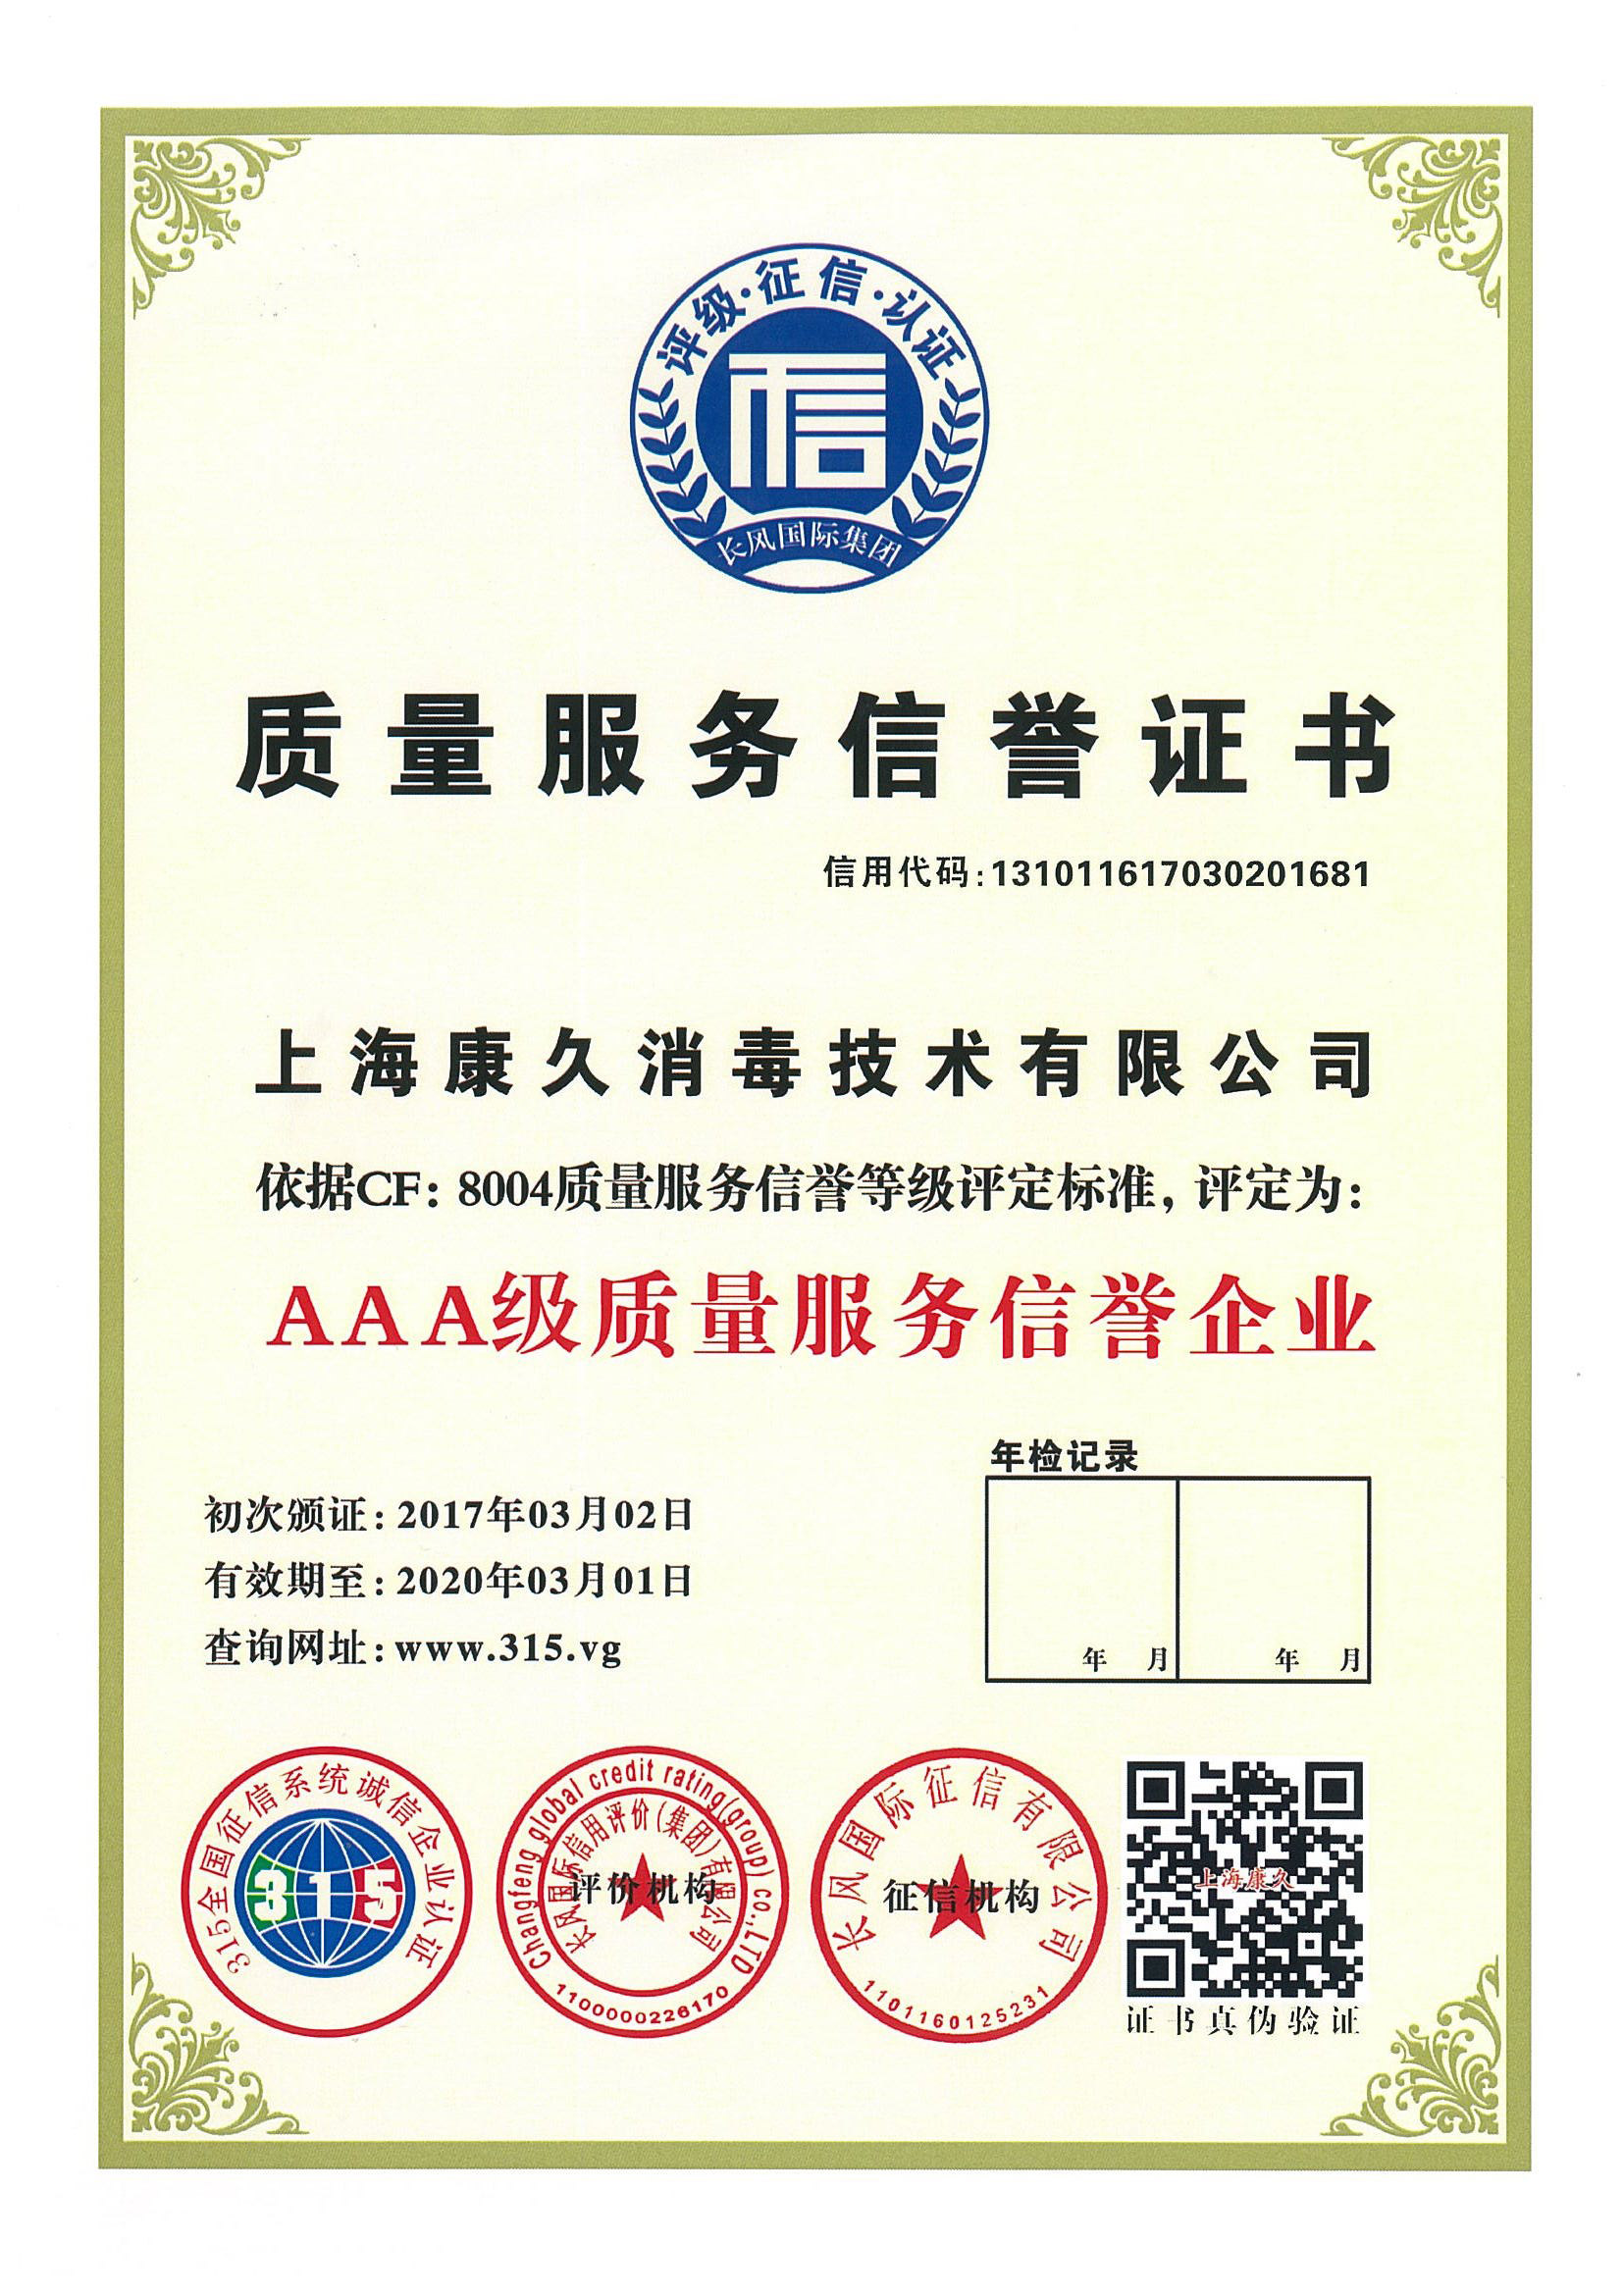 “汉中质量服务信誉证书